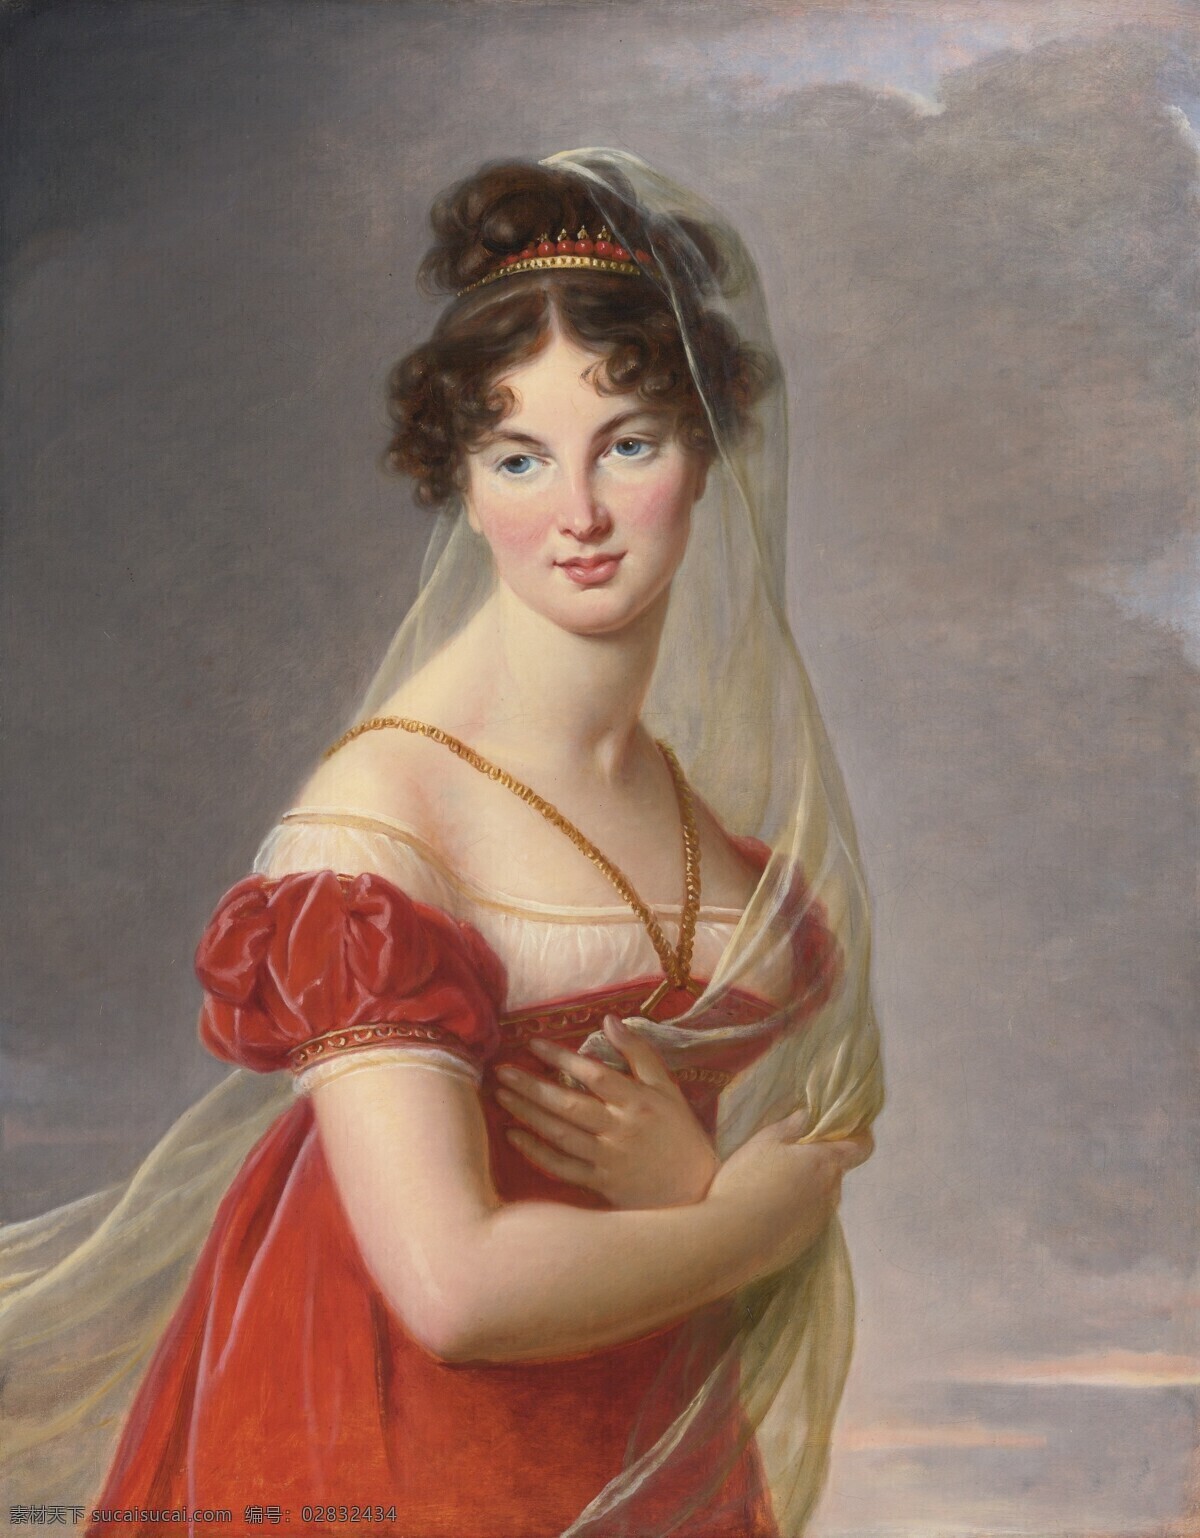 贵妇 半身画像 贵族之家 天空 少妇 19世纪油画 油画 绘画书法 文化艺术